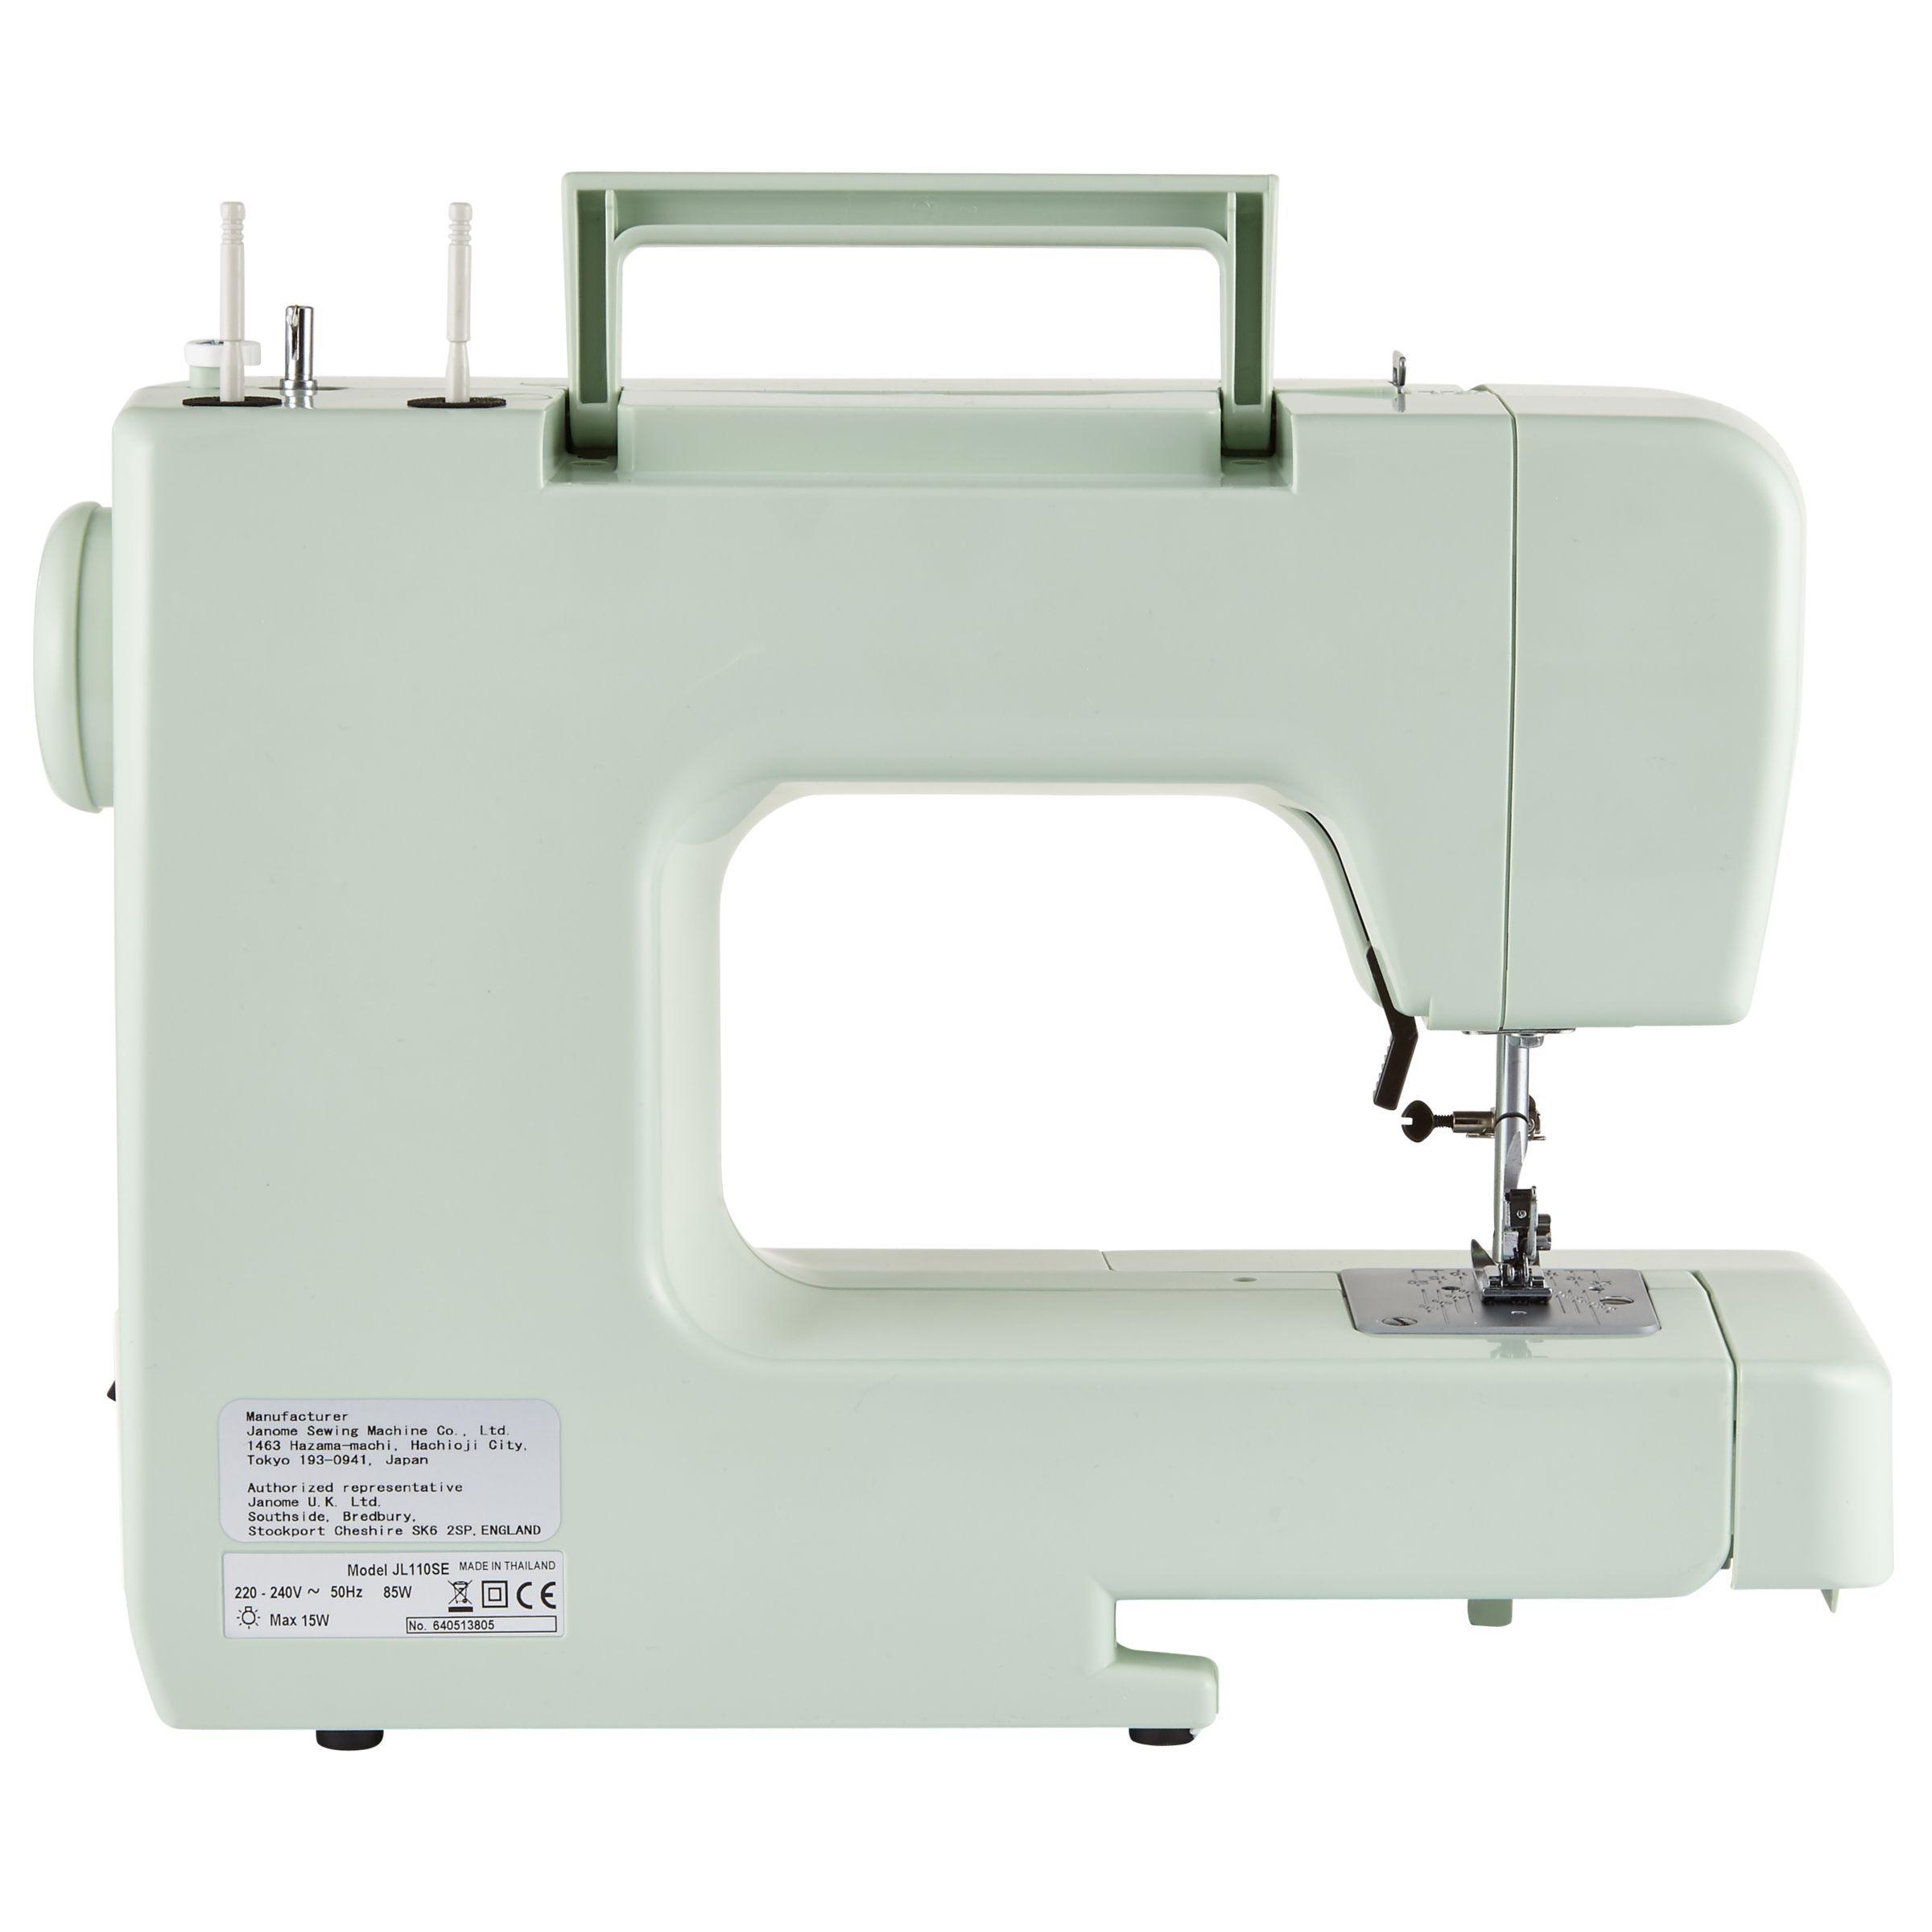 John Lewis JL110 Sewing Machine, Soft Pink